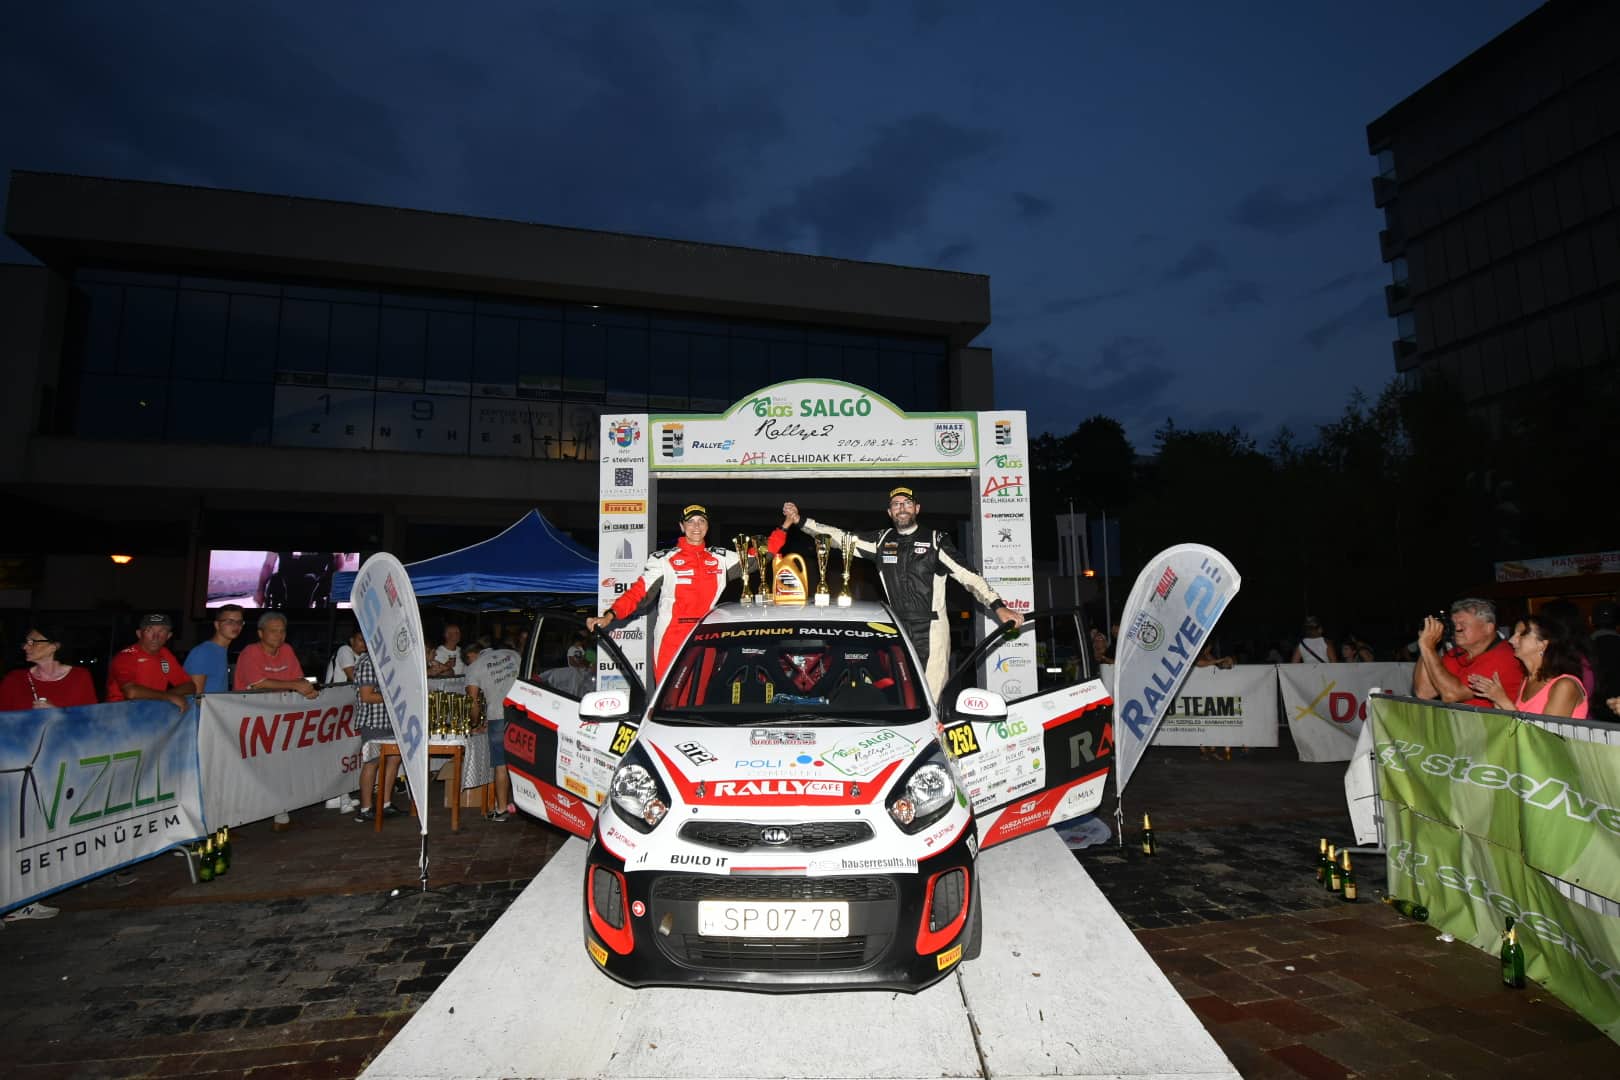 Rónavölgyiék nyerték a Salgó Rallye-t